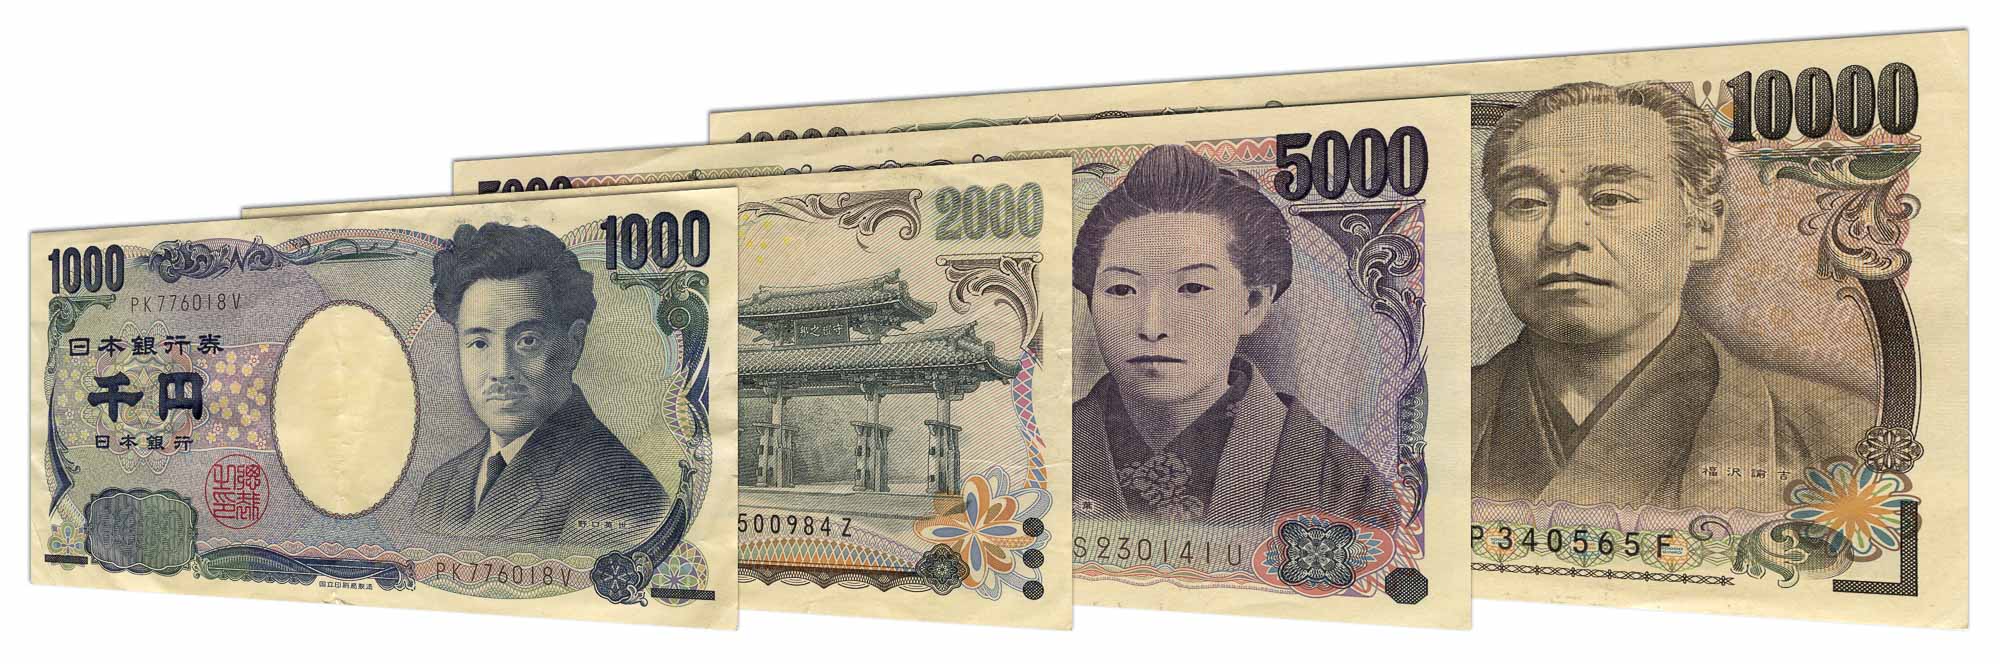 Купюры йен. Йена Япония. Денежная валюта в Японии. 2000 Японских йен. Иен деньги.